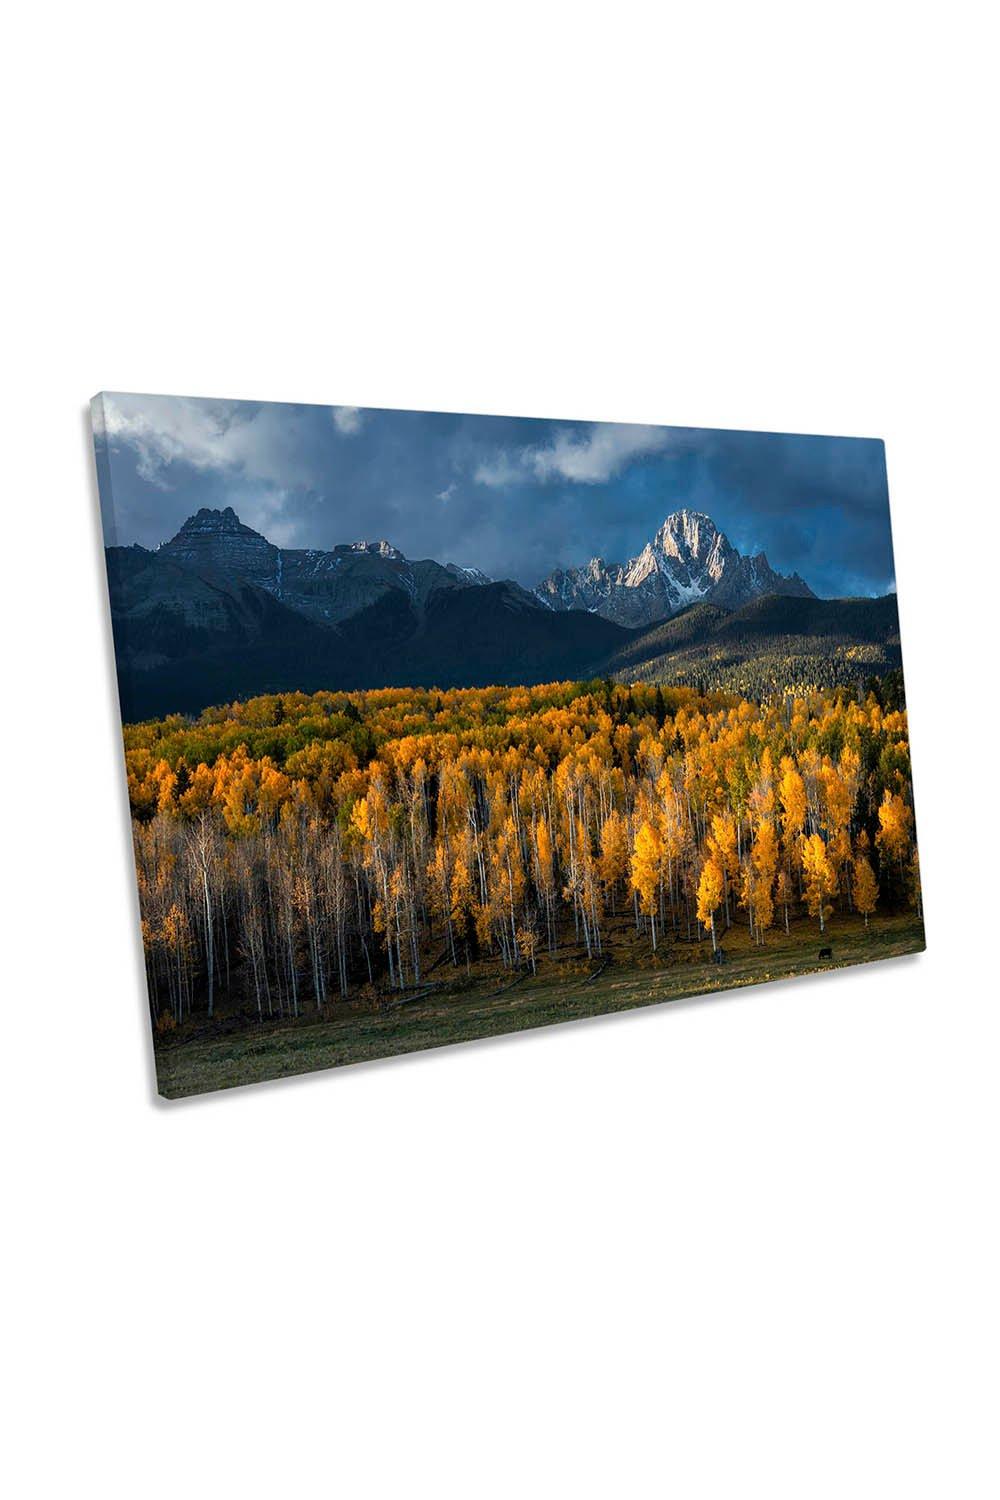 Mount Sneffels Aspen Autumn Landscape Canvas Wall Art Picture Print